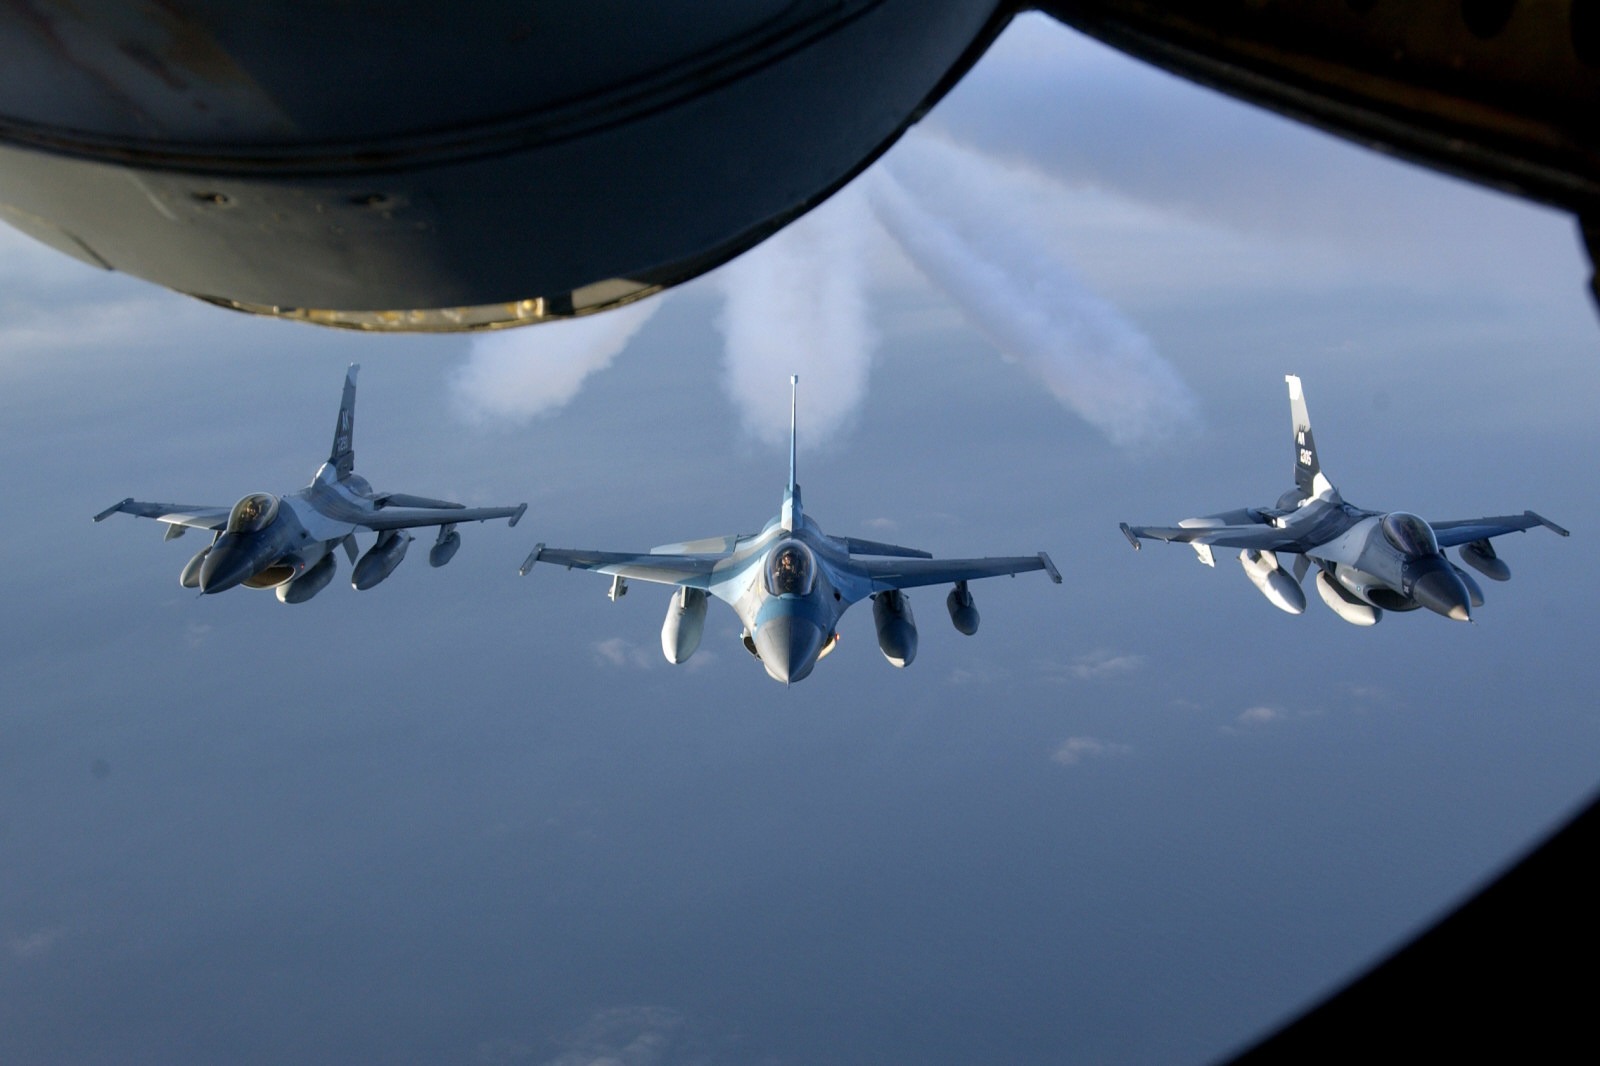 Θεοφάνεια 2020: Παραβίαση του ελληνικού εναέριου χώρου από τουρκικό F-16